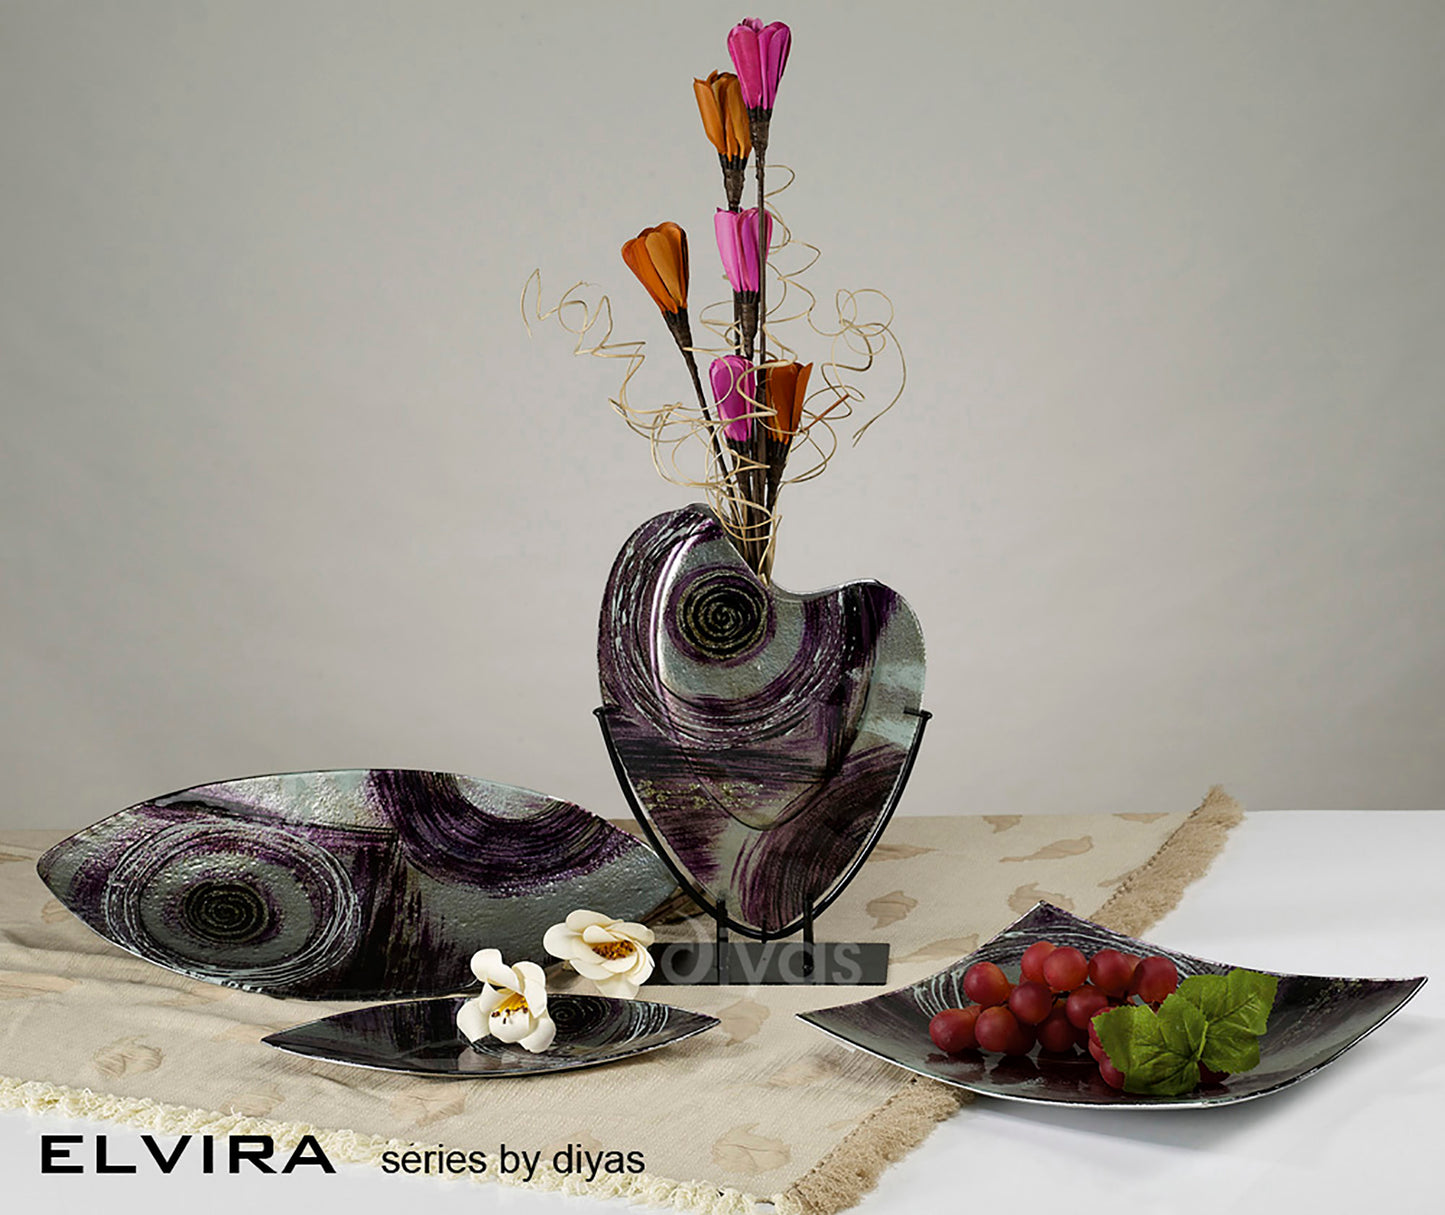 Elvira Glass Art Boat Platter Oval - Large